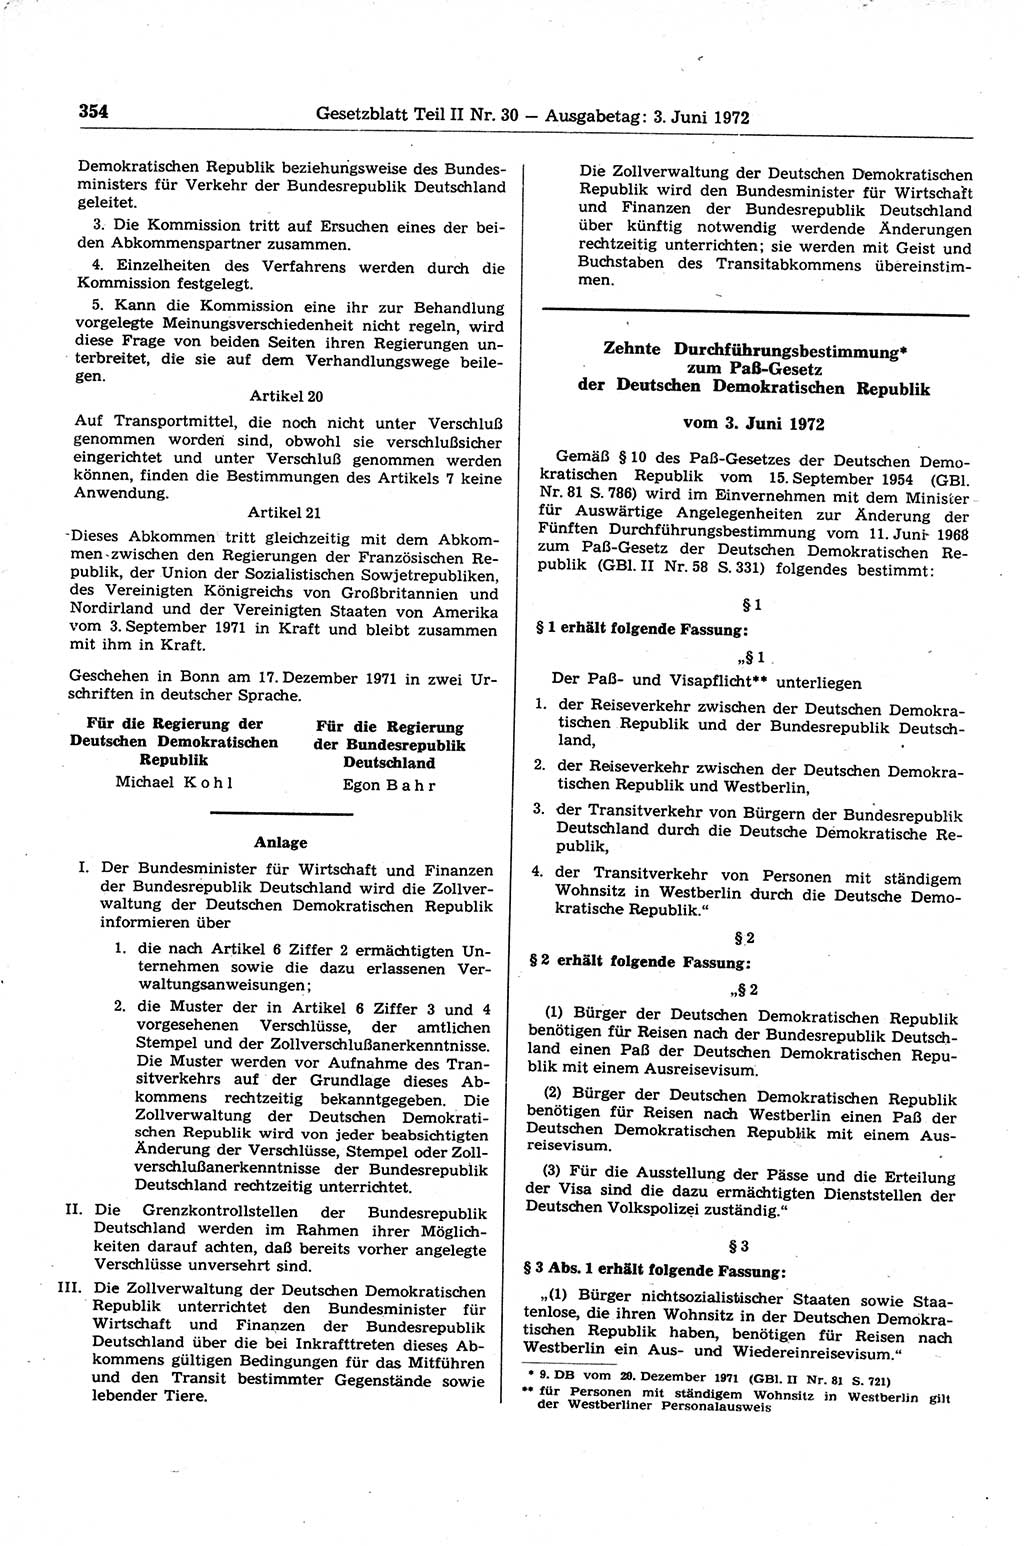 Gesetzblatt (GBl.) der Deutschen Demokratischen Republik (DDR) Teil ⅠⅠ 1972, Seite 354 (GBl. DDR ⅠⅠ 1972, S. 354)